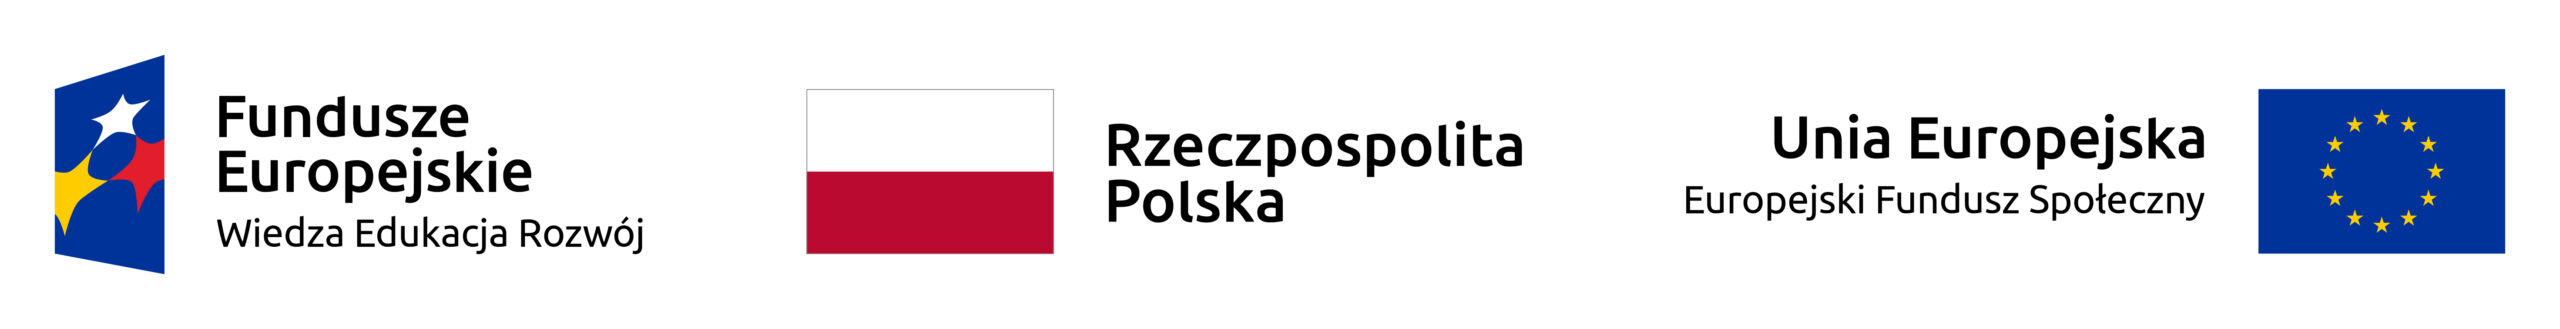 Logotyp Funduszy Europejskich, Flaga Rzeczpospolitej Polskiej Logotyp Unii Europejskiej